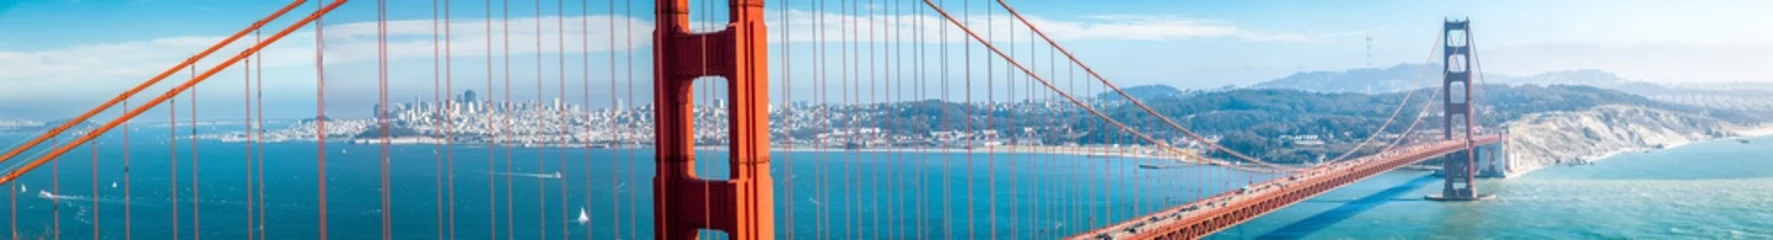 Zelfklevend Fotobehang Golden Gate Bridge-panorama met de horizon van San Francisco in de zomer, Californië, de V.S © JFL Photography